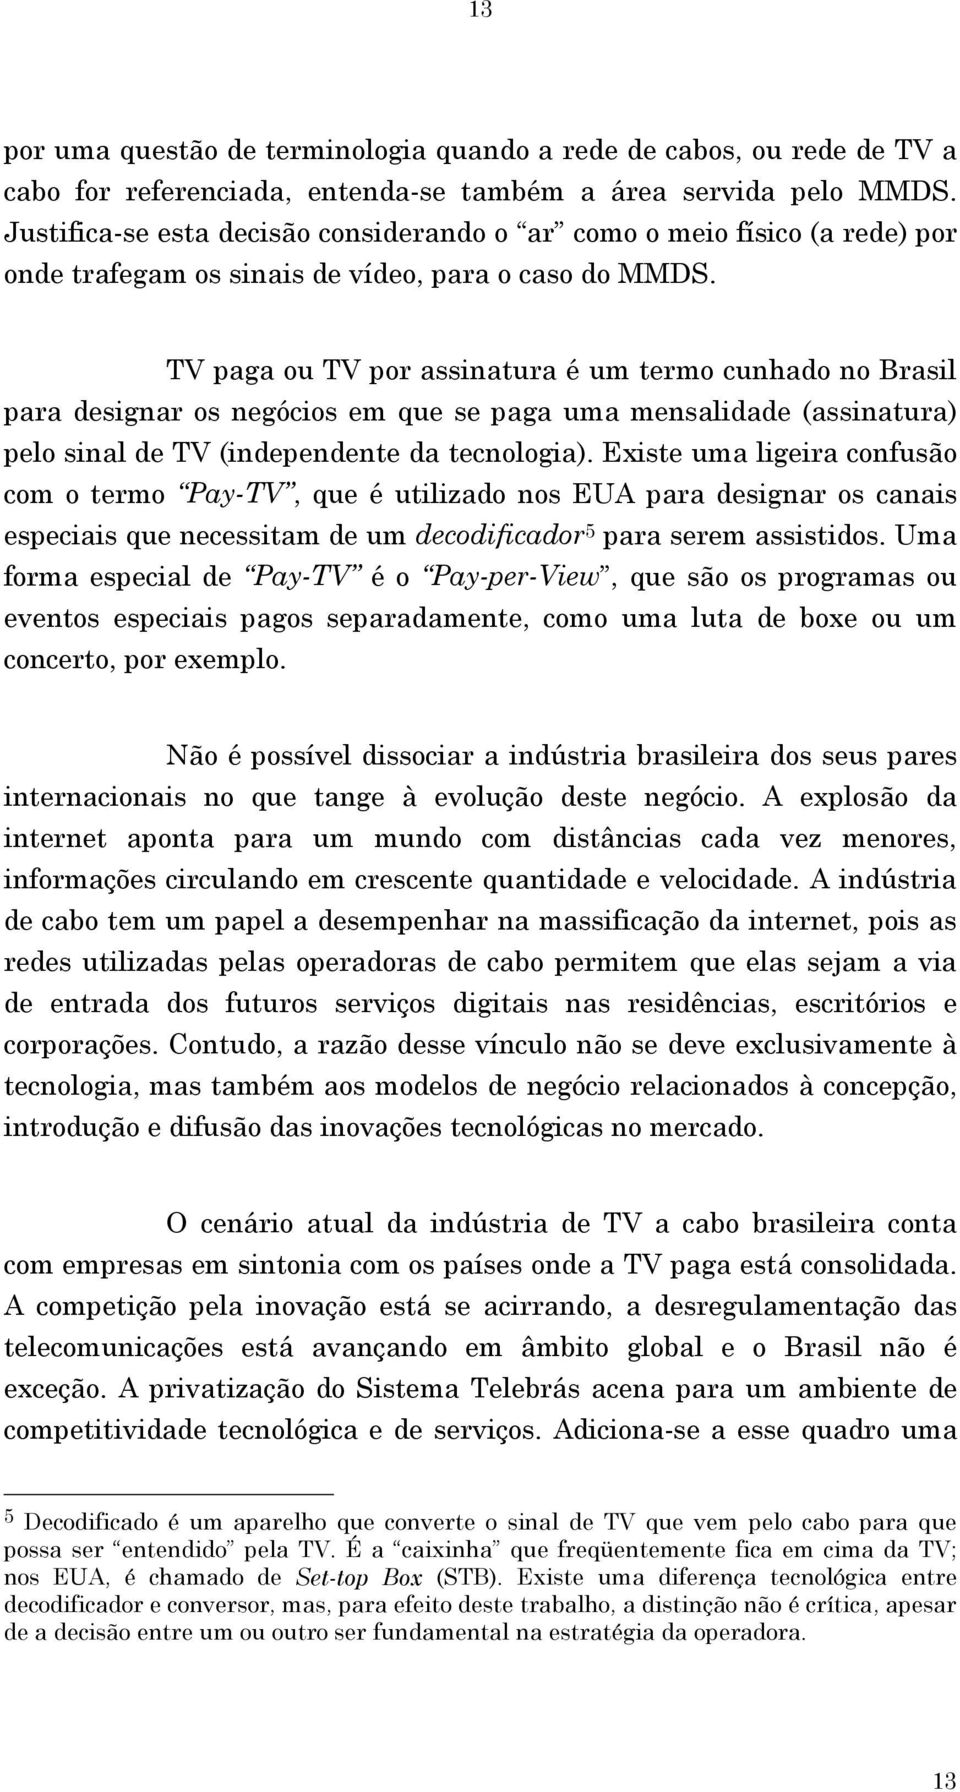 TV paga ou TV por assinatura é um termo cunhado no Brasil para designar os negócios em que se paga uma mensalidade (assinatura) pelo sinal de TV (independente da tecnologia).